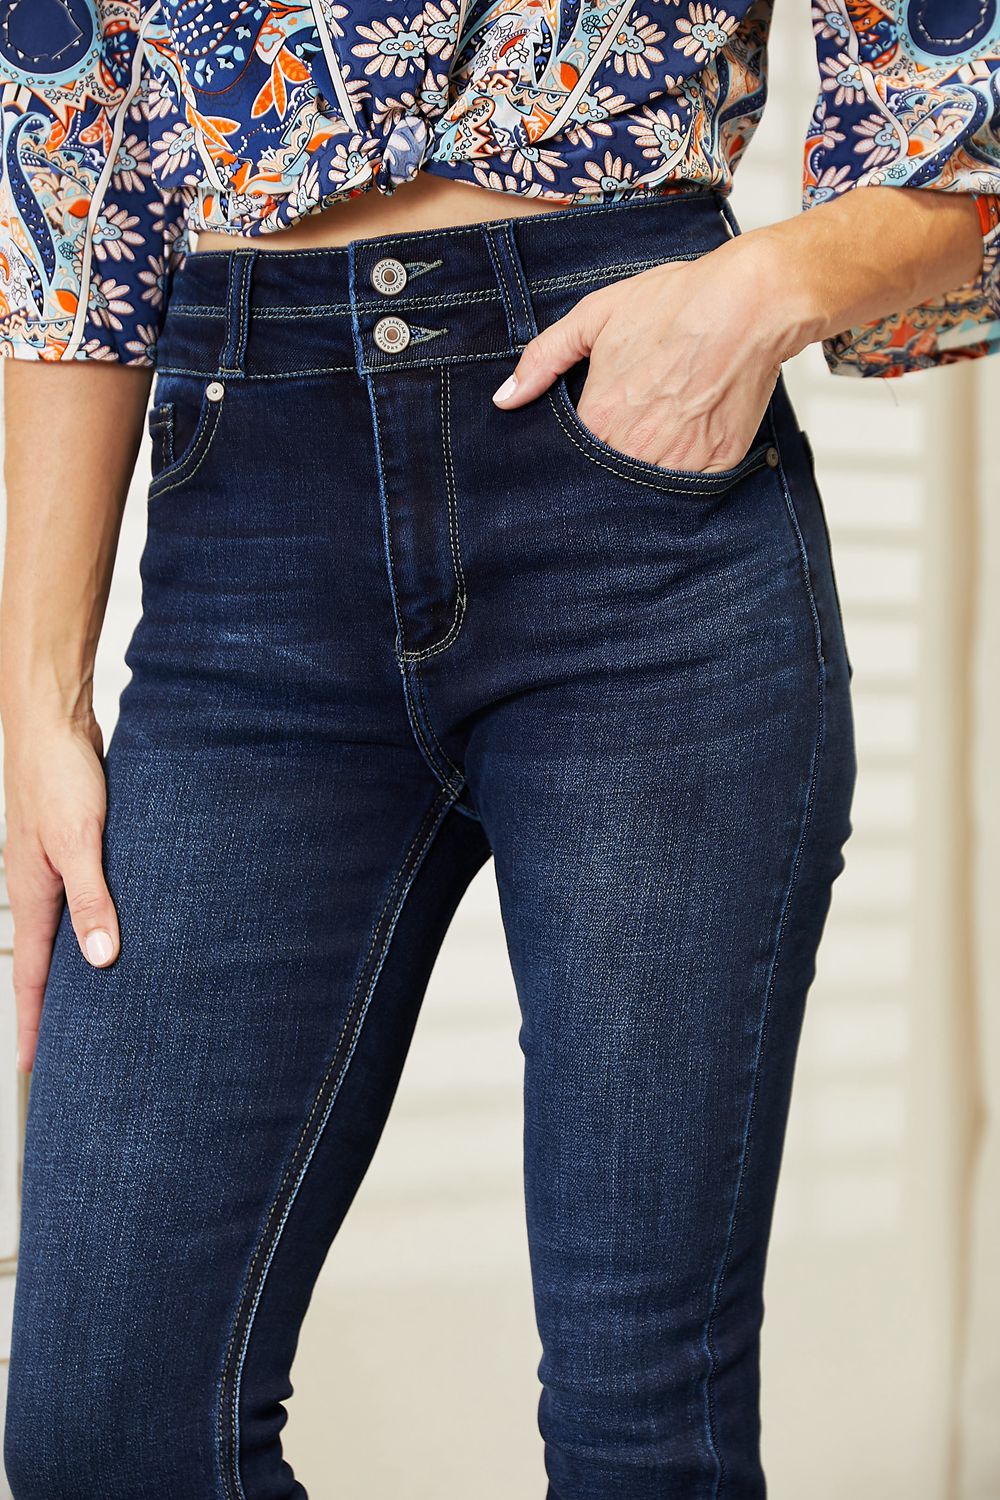 KanCan Super High Waist Jeans - Bootcut Jeans For Women